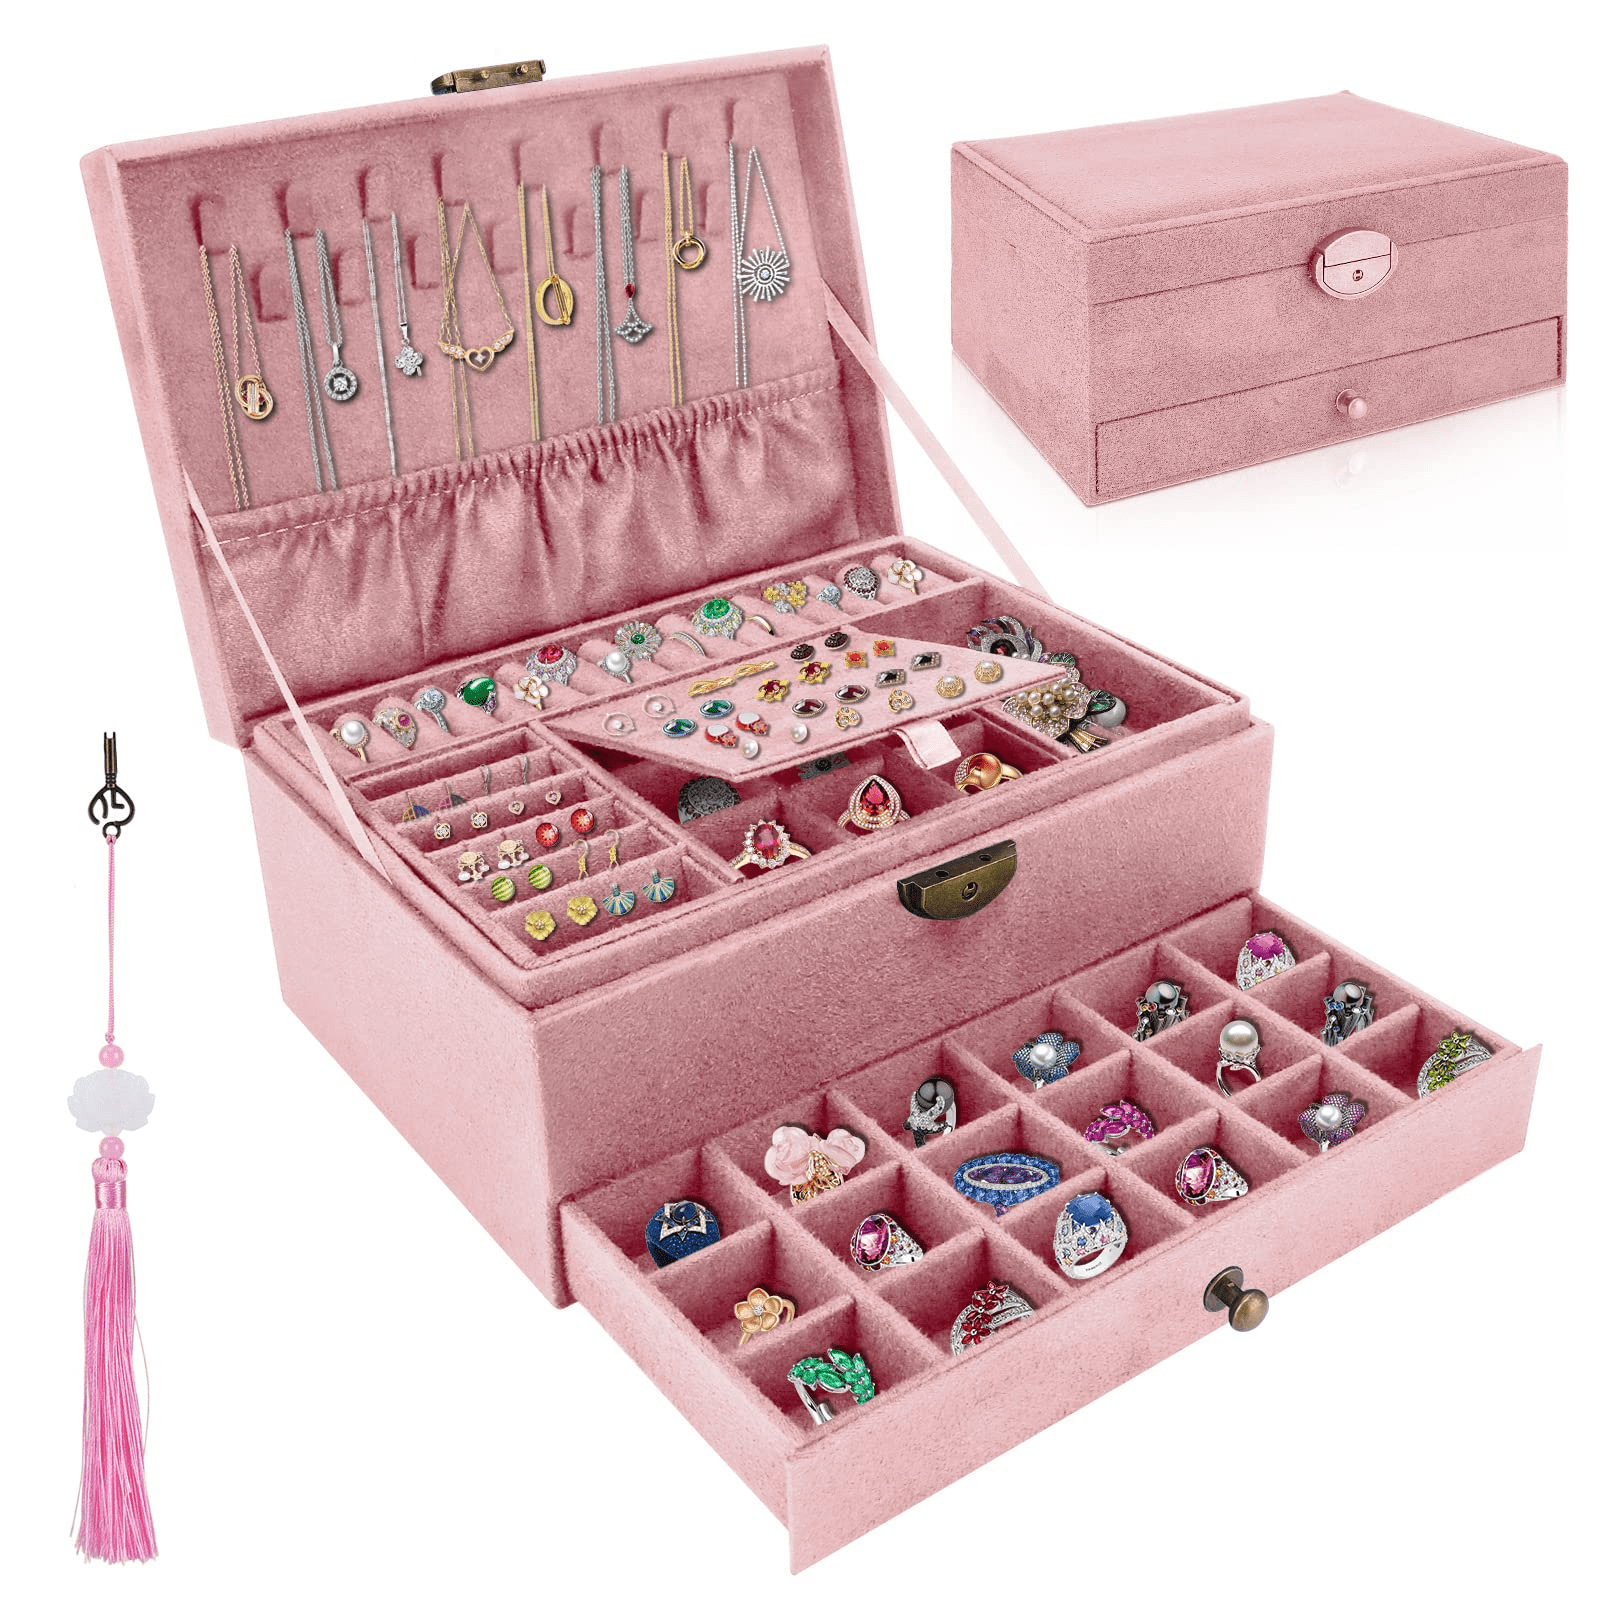 ProttyLife Jewelry Organizer Box for Women Girls, Jewelry Box 3-Tier Jewelry Display Case and Organizer,Lockable Jewelry Display Case Anti Tarnish